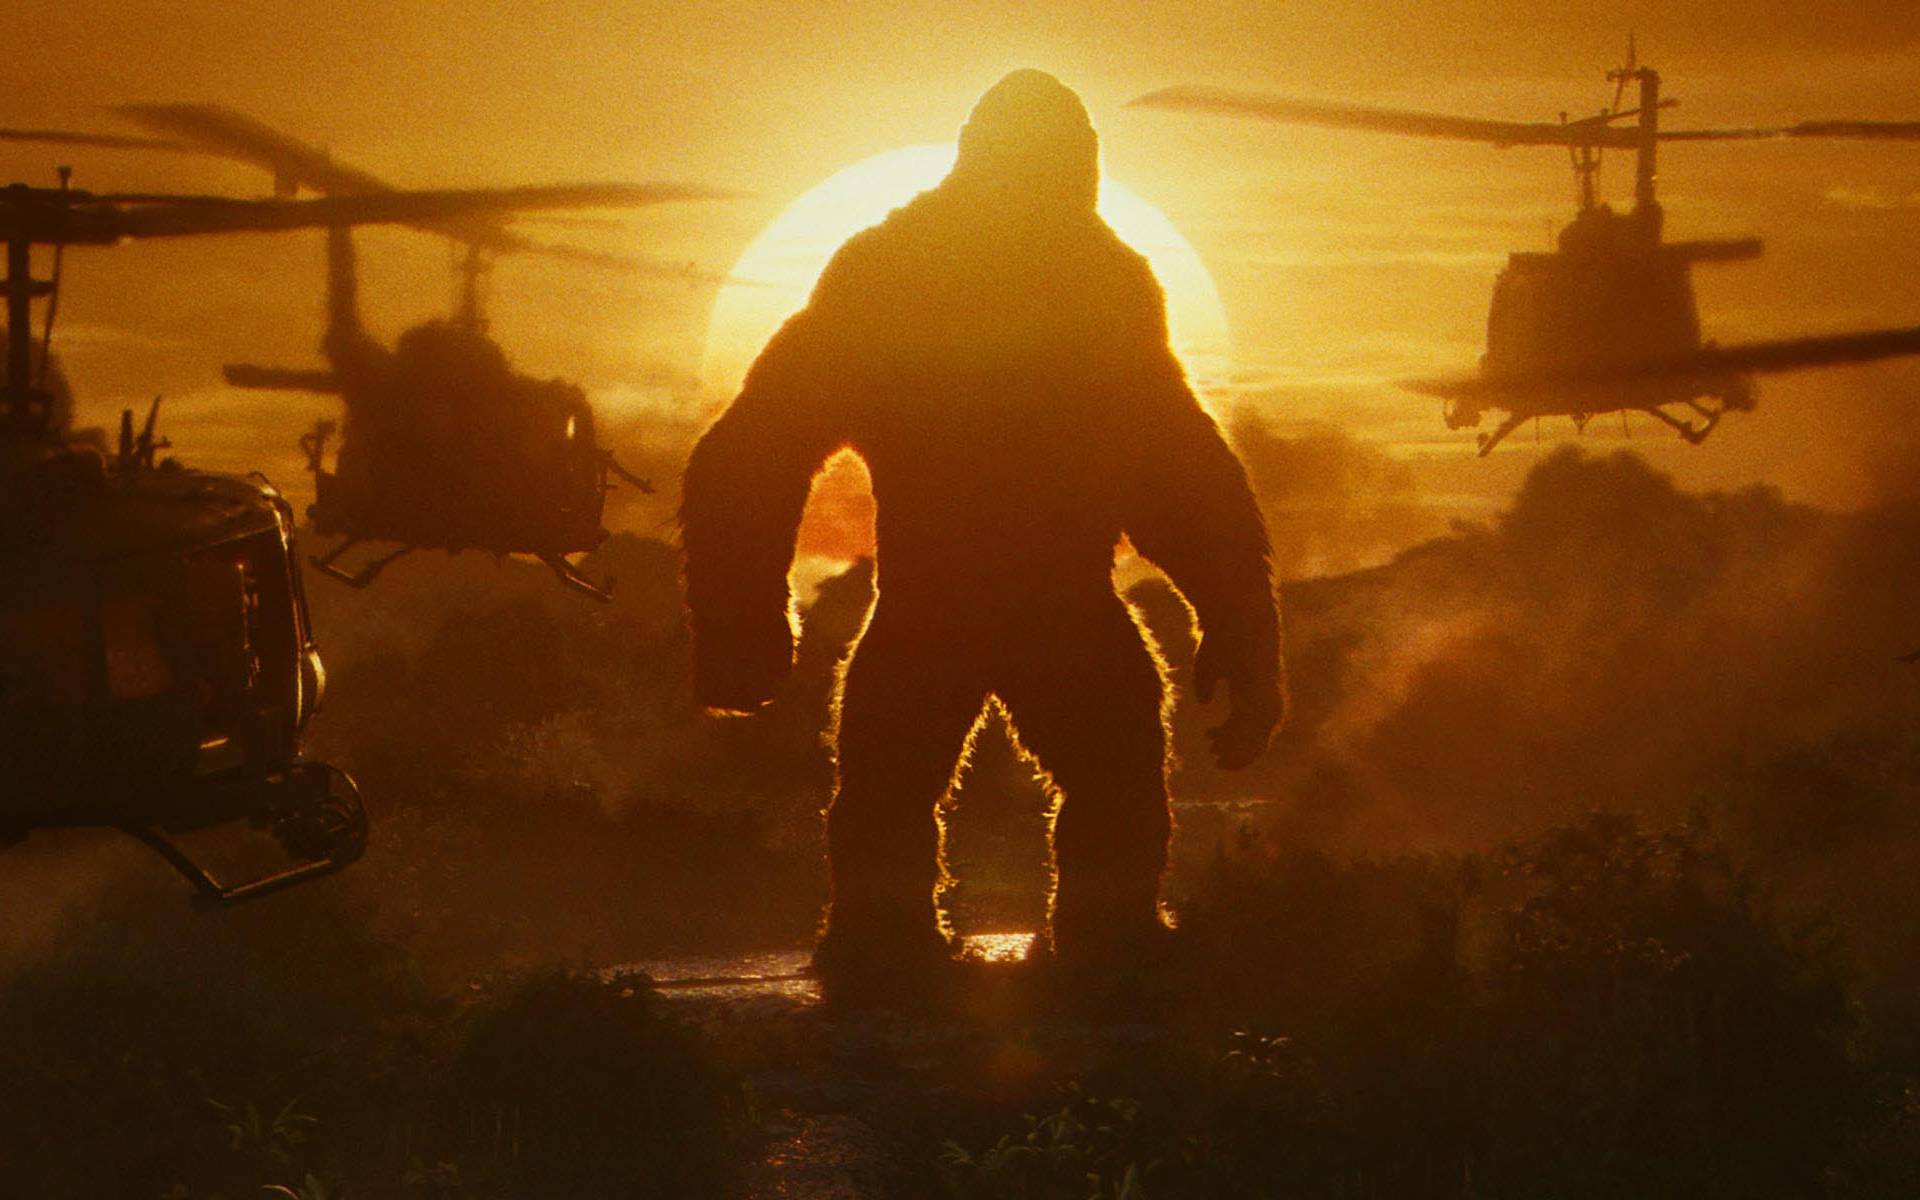 Kolosalan je: Ovog puta je King Kong veći nego što je ikad bio